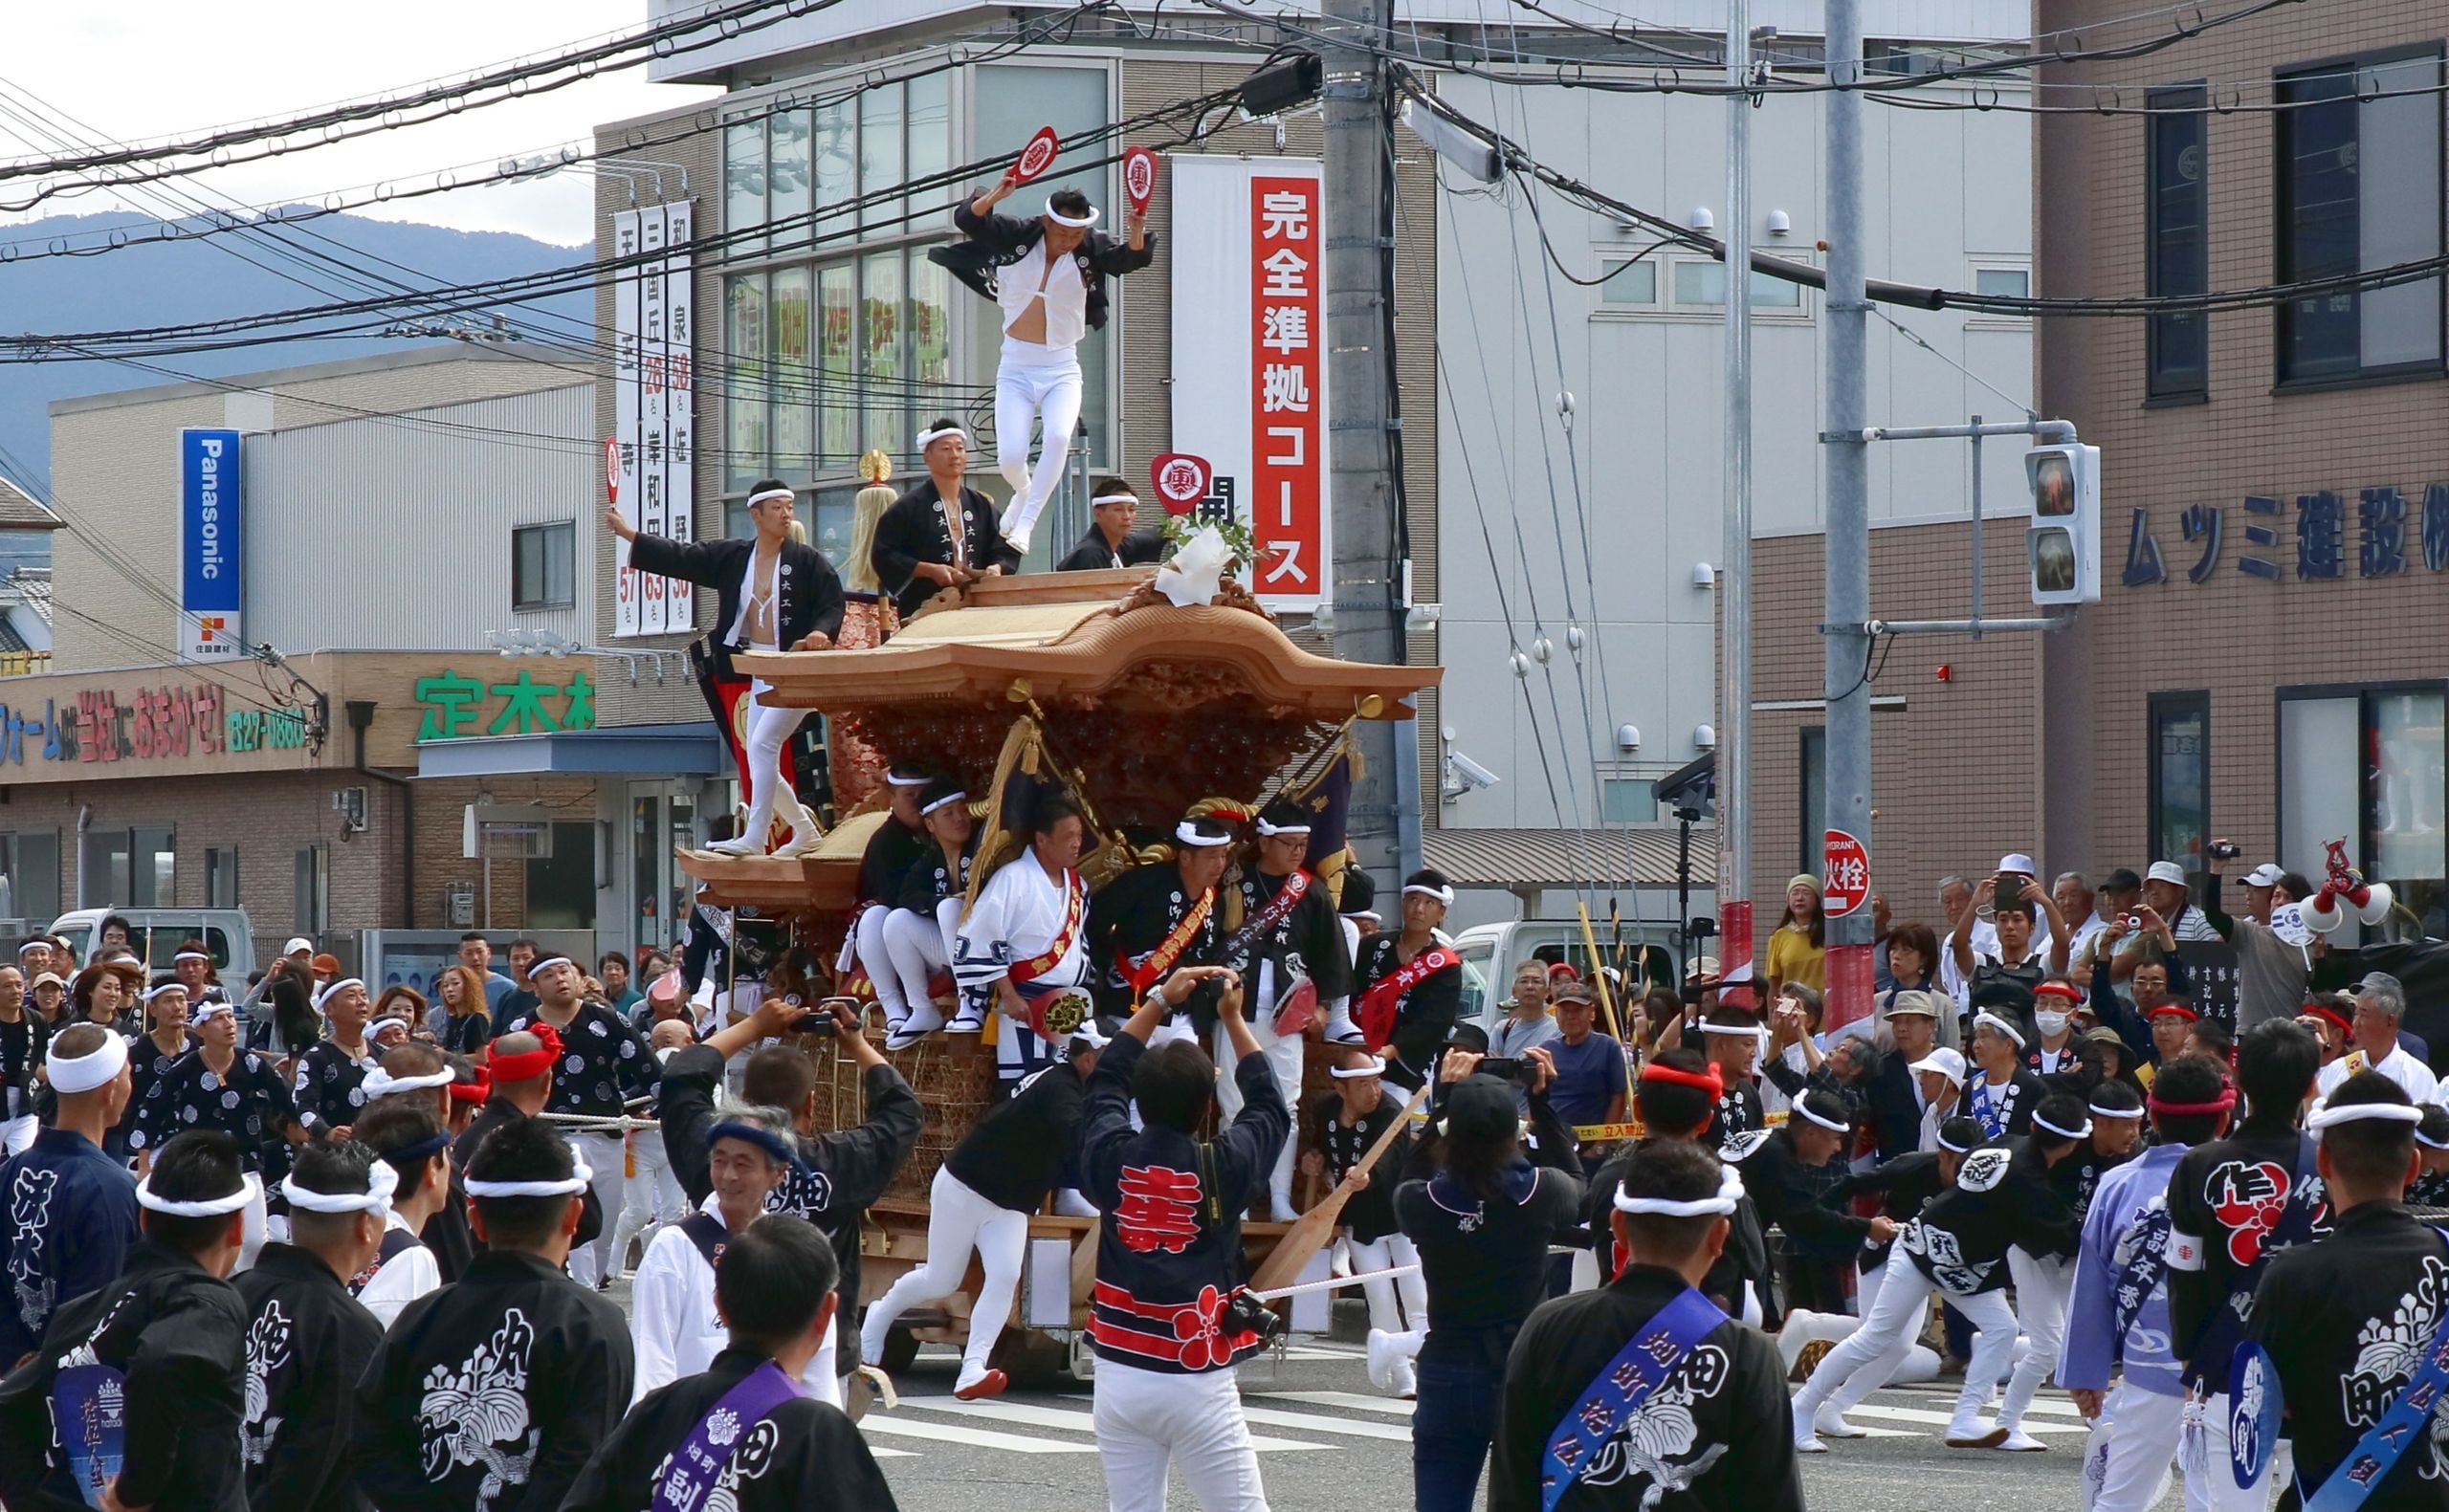 だんじり 祭り 10 月 岸和田だんじり祭りおすすめ見学場所と時間帯 見所を徹底紹介